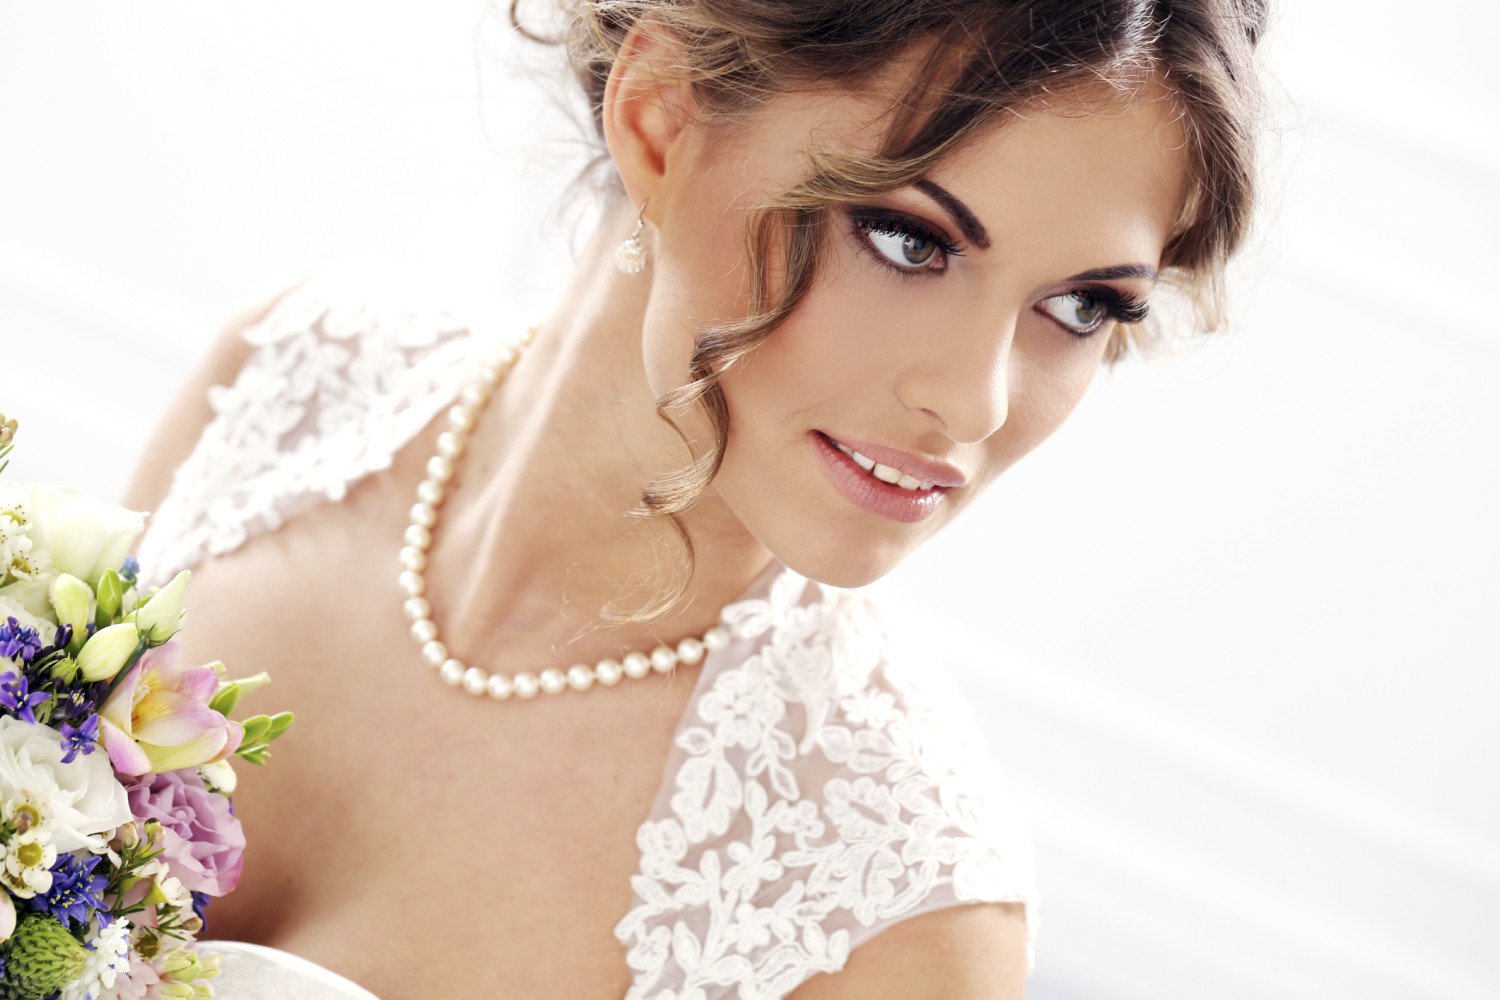 Gioielli sposa collana di perle - Daniele Panareo Fotografo Lecce